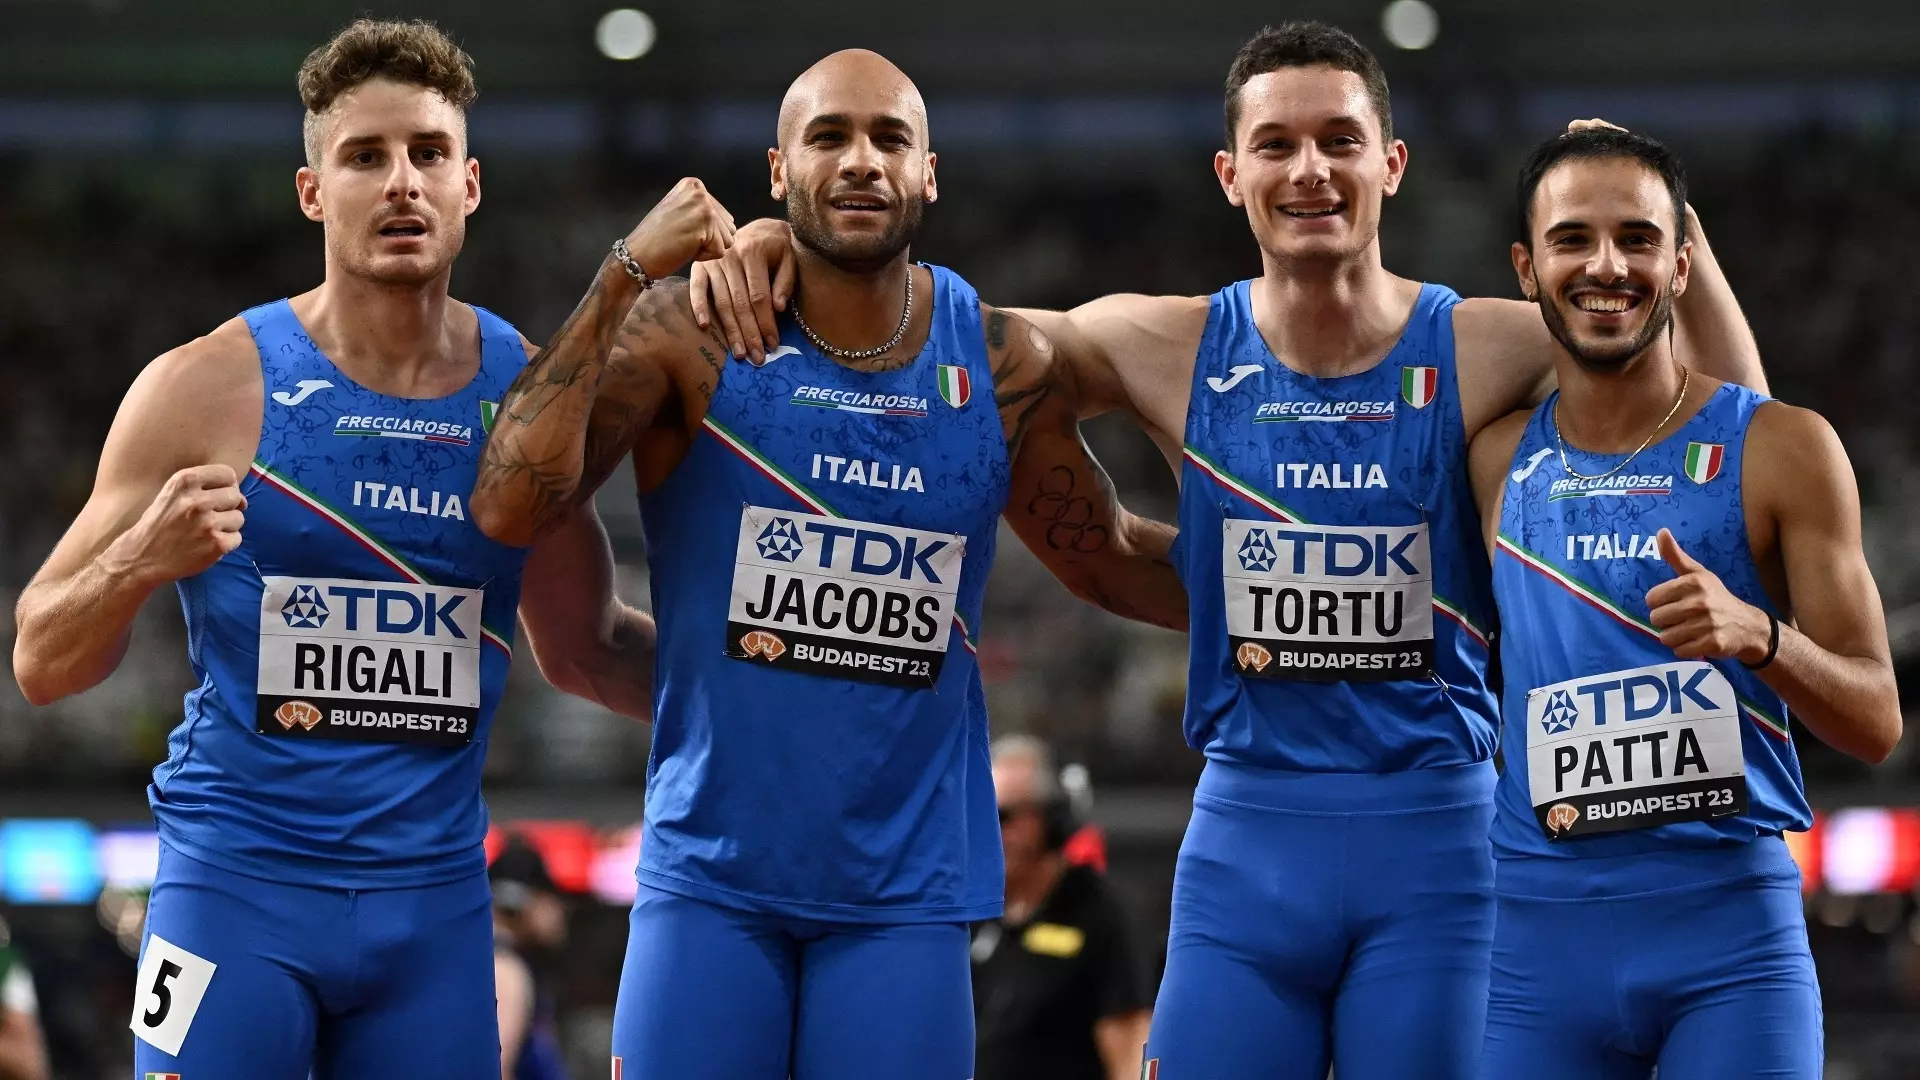 Mondiali, Italia argento nella 4×100 maschile